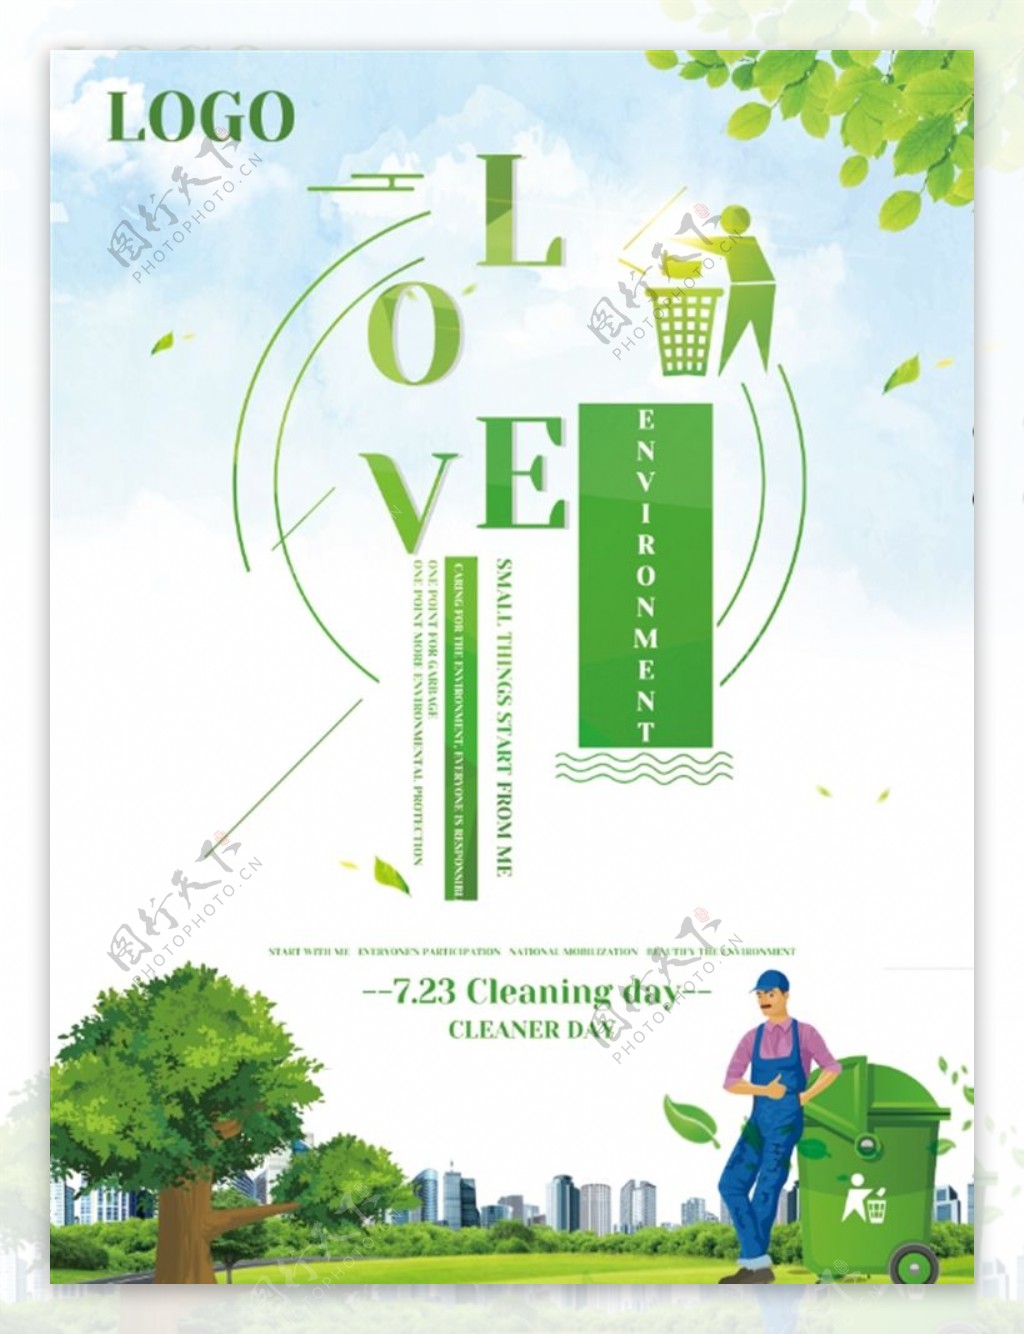 绿色清洁工日公益海报